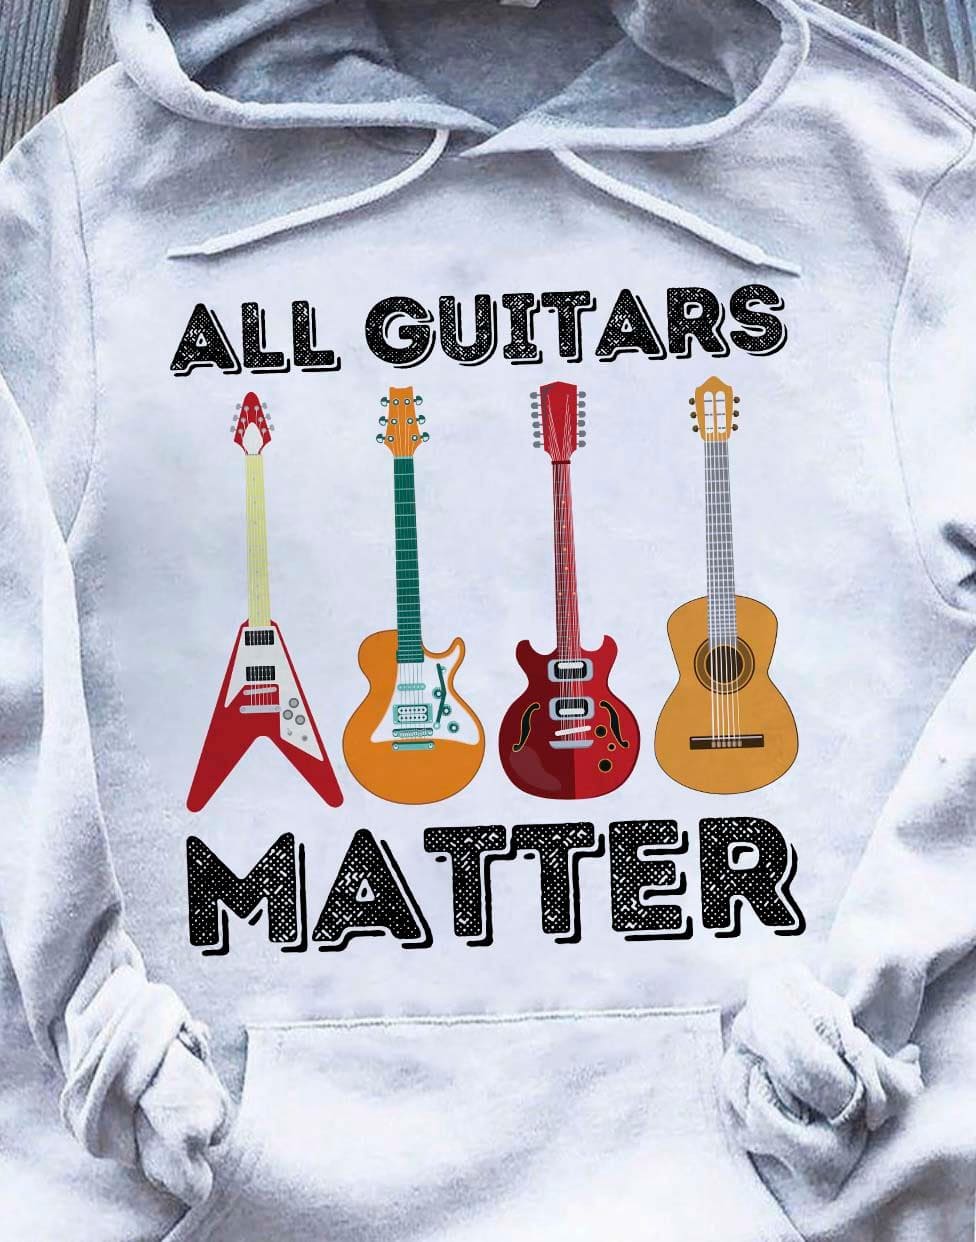 Guitar Collection - All guitar matter